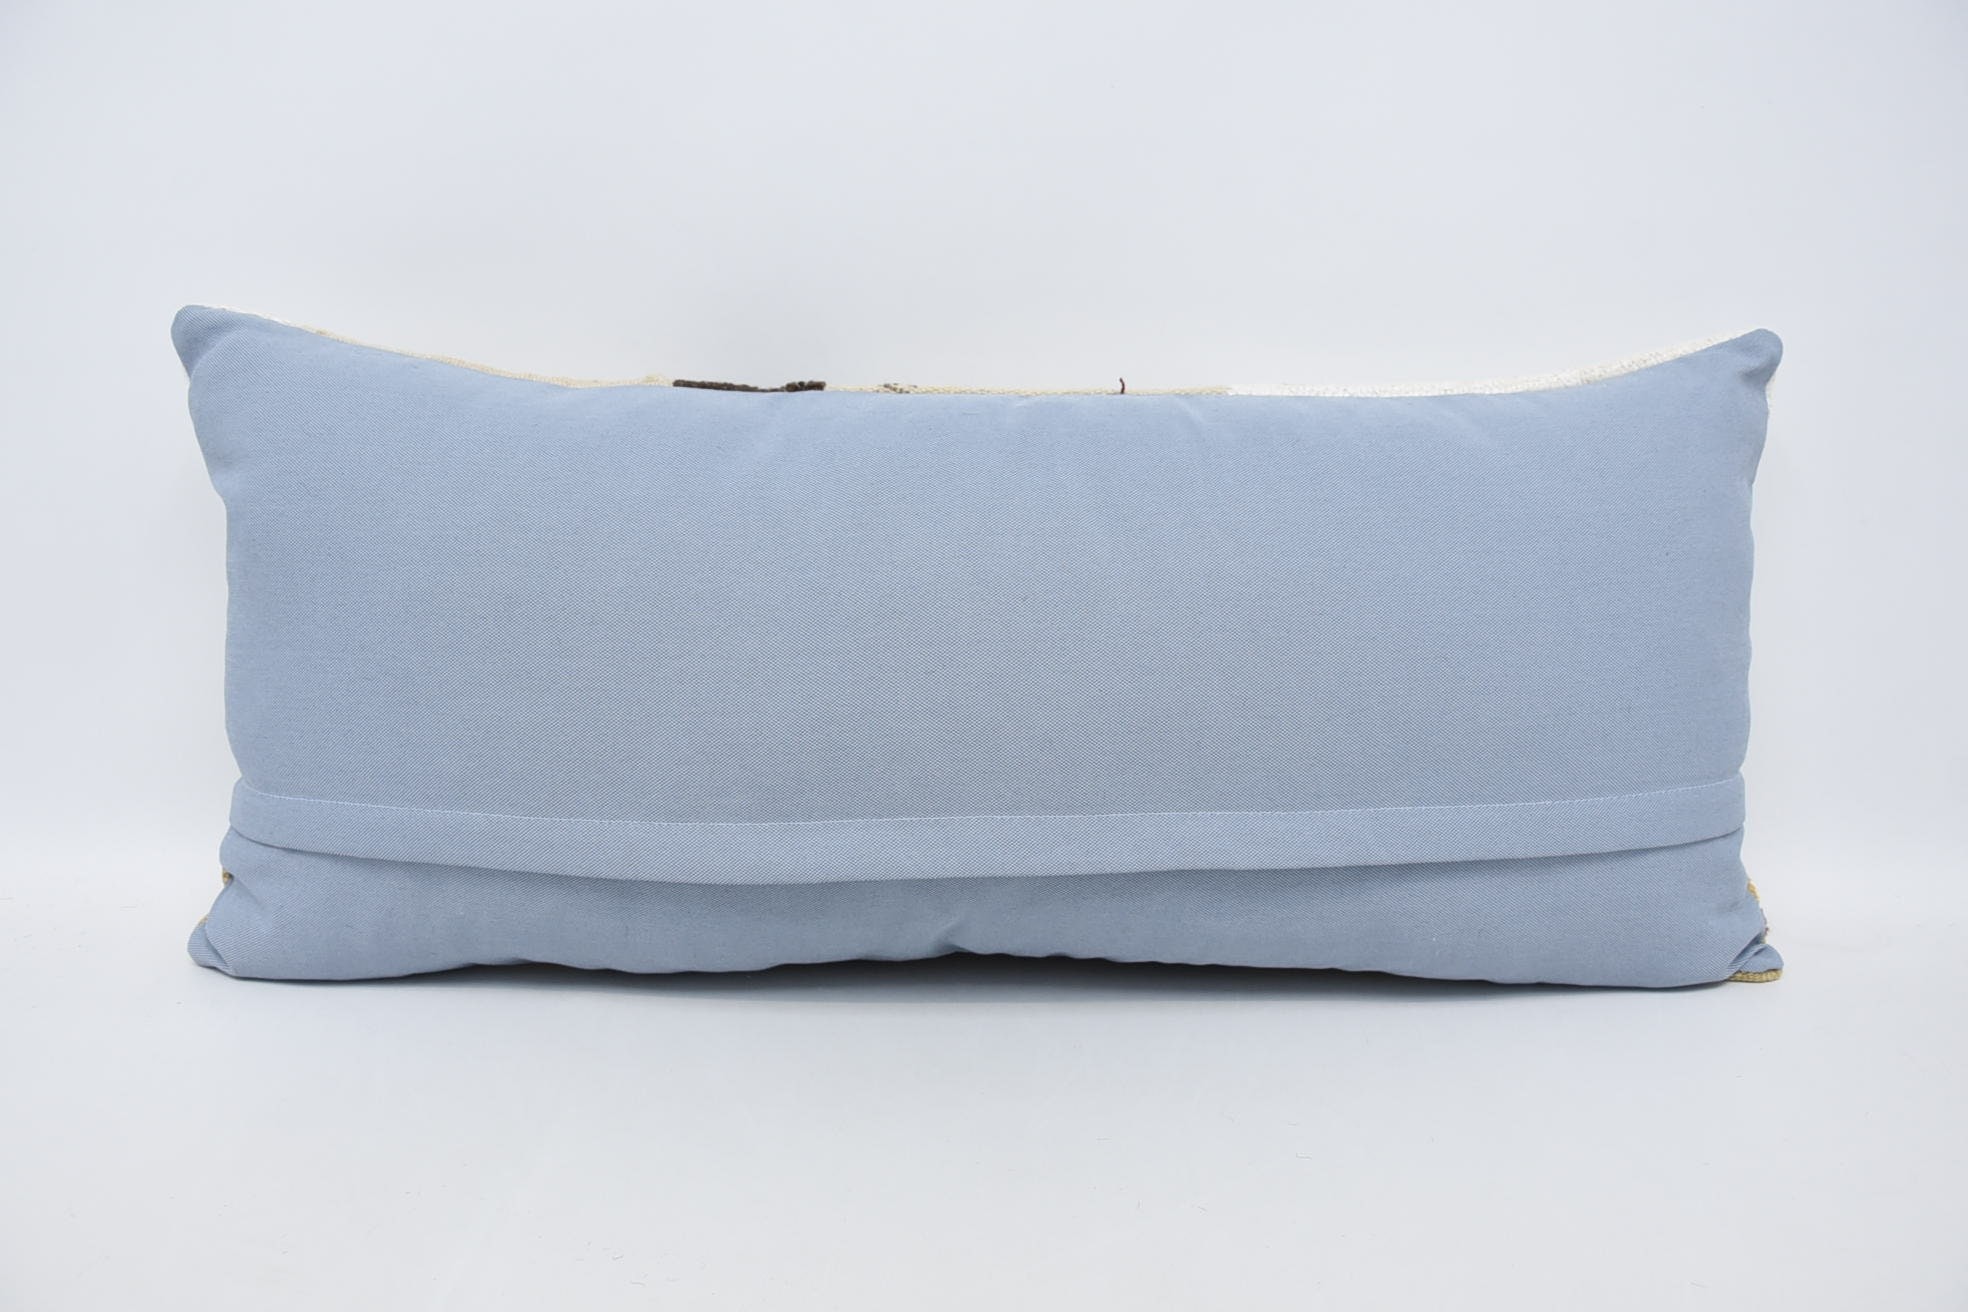 Nautical Throw Pillow Sham, Vintage Kilim Throw Pillow, 16"x36" Beige Pillow, Pillow for Couch, Boho Pillow, Vintage Throw Pillow Case